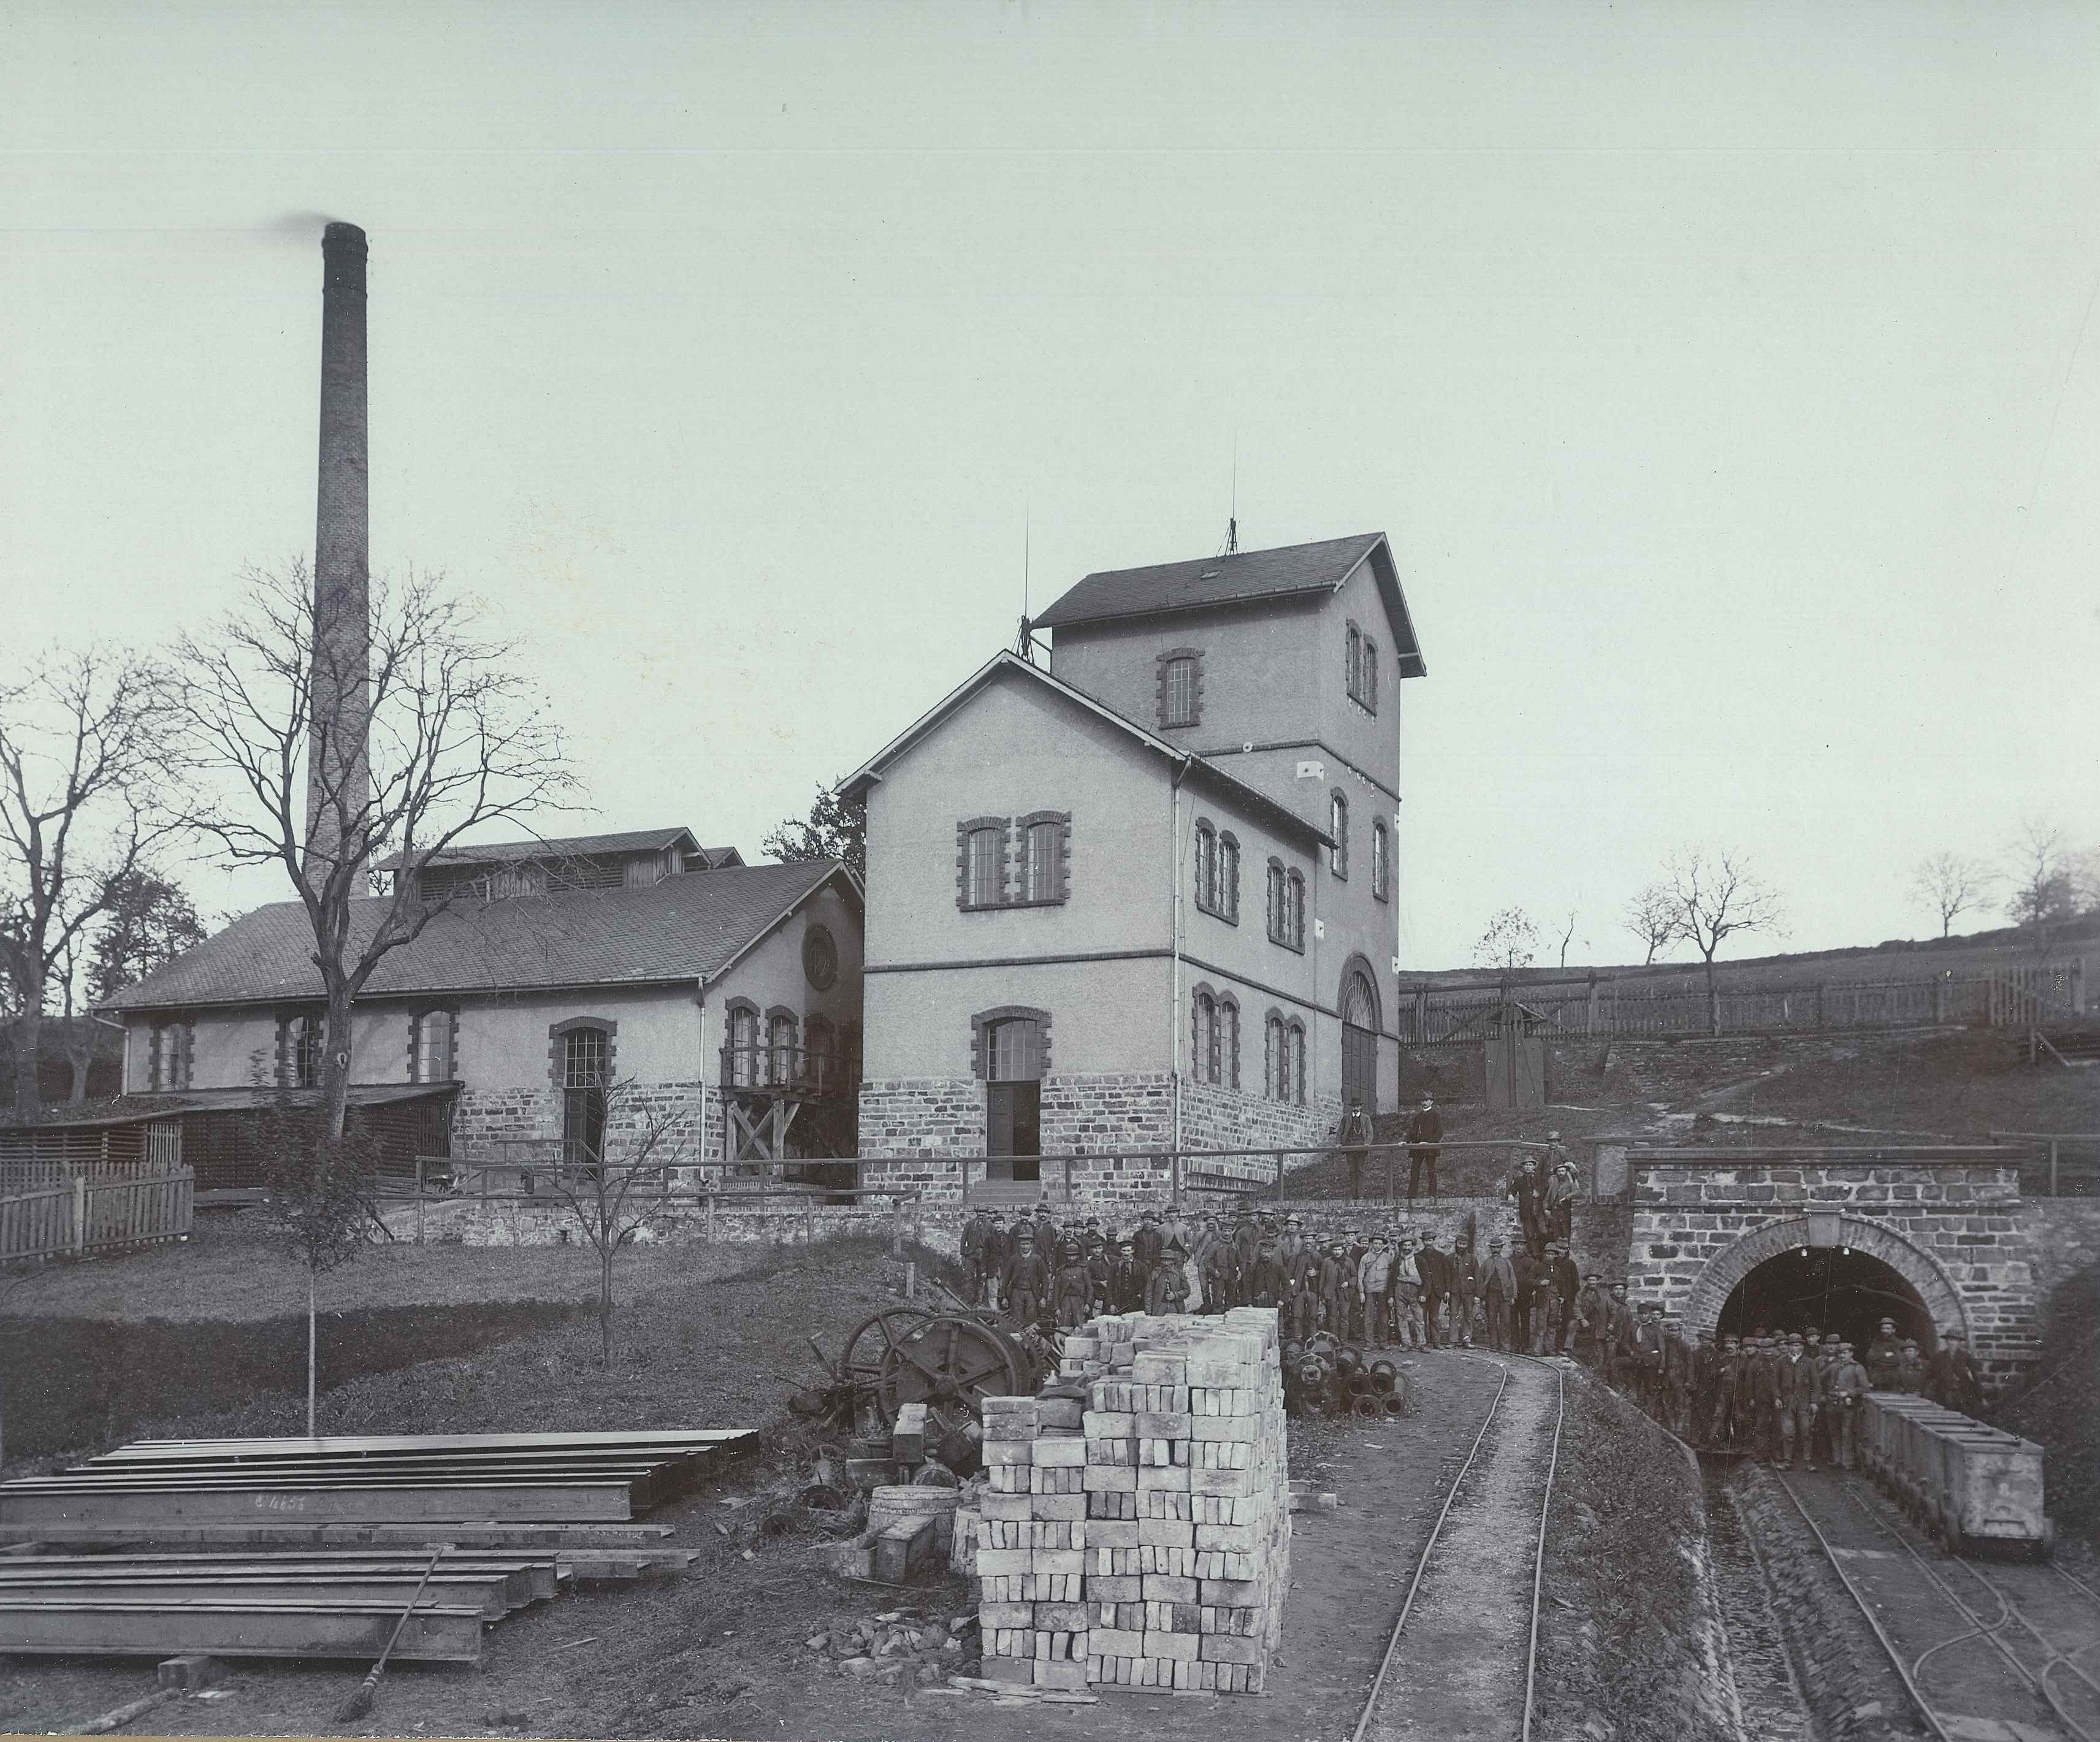 Grubenhaus "Grube Werner", Vierwindenhöhe Bendorf 1902 (REM CC BY-NC-SA)